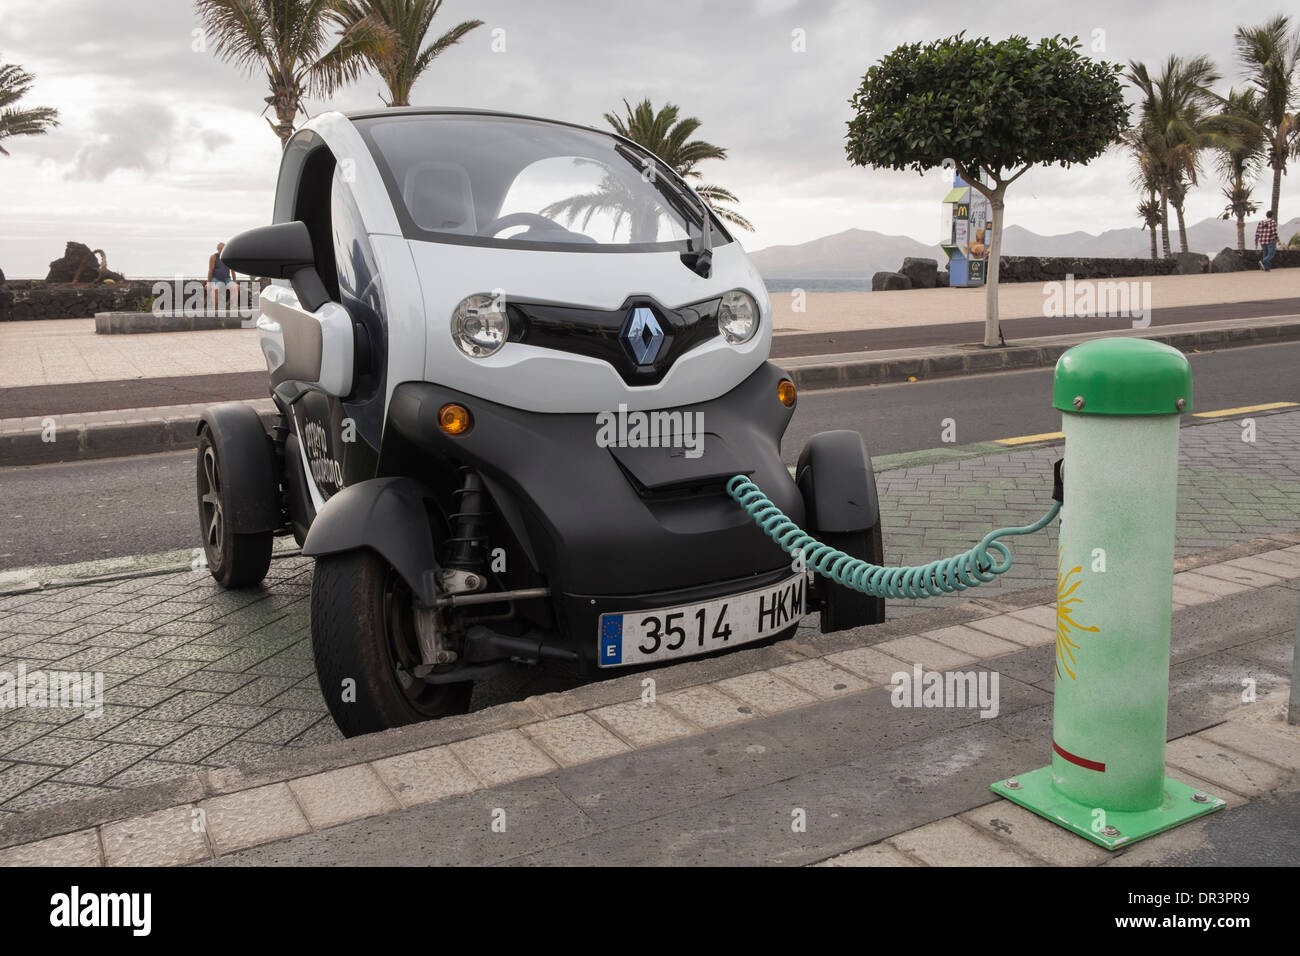 Renault Twizy batteriebetriebene Elektro-Auto angeschlossen, um eine  Sol-Lar-Batterie Ladestation am Straßenrand in Kanarische Inseln, Spanien  Stockfotografie - Alamy